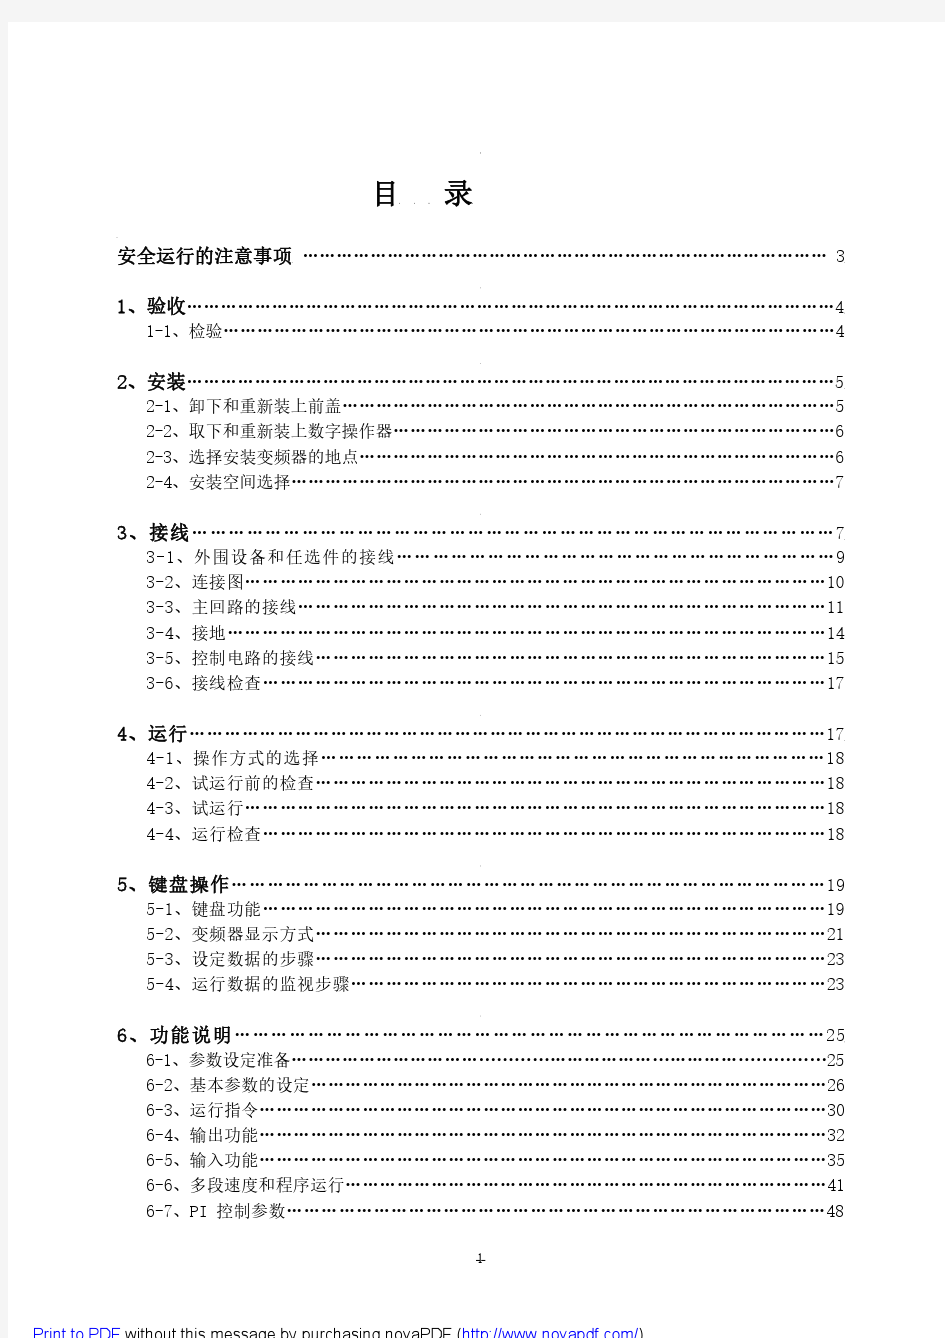 菱科LK600系列变频器中文说明书